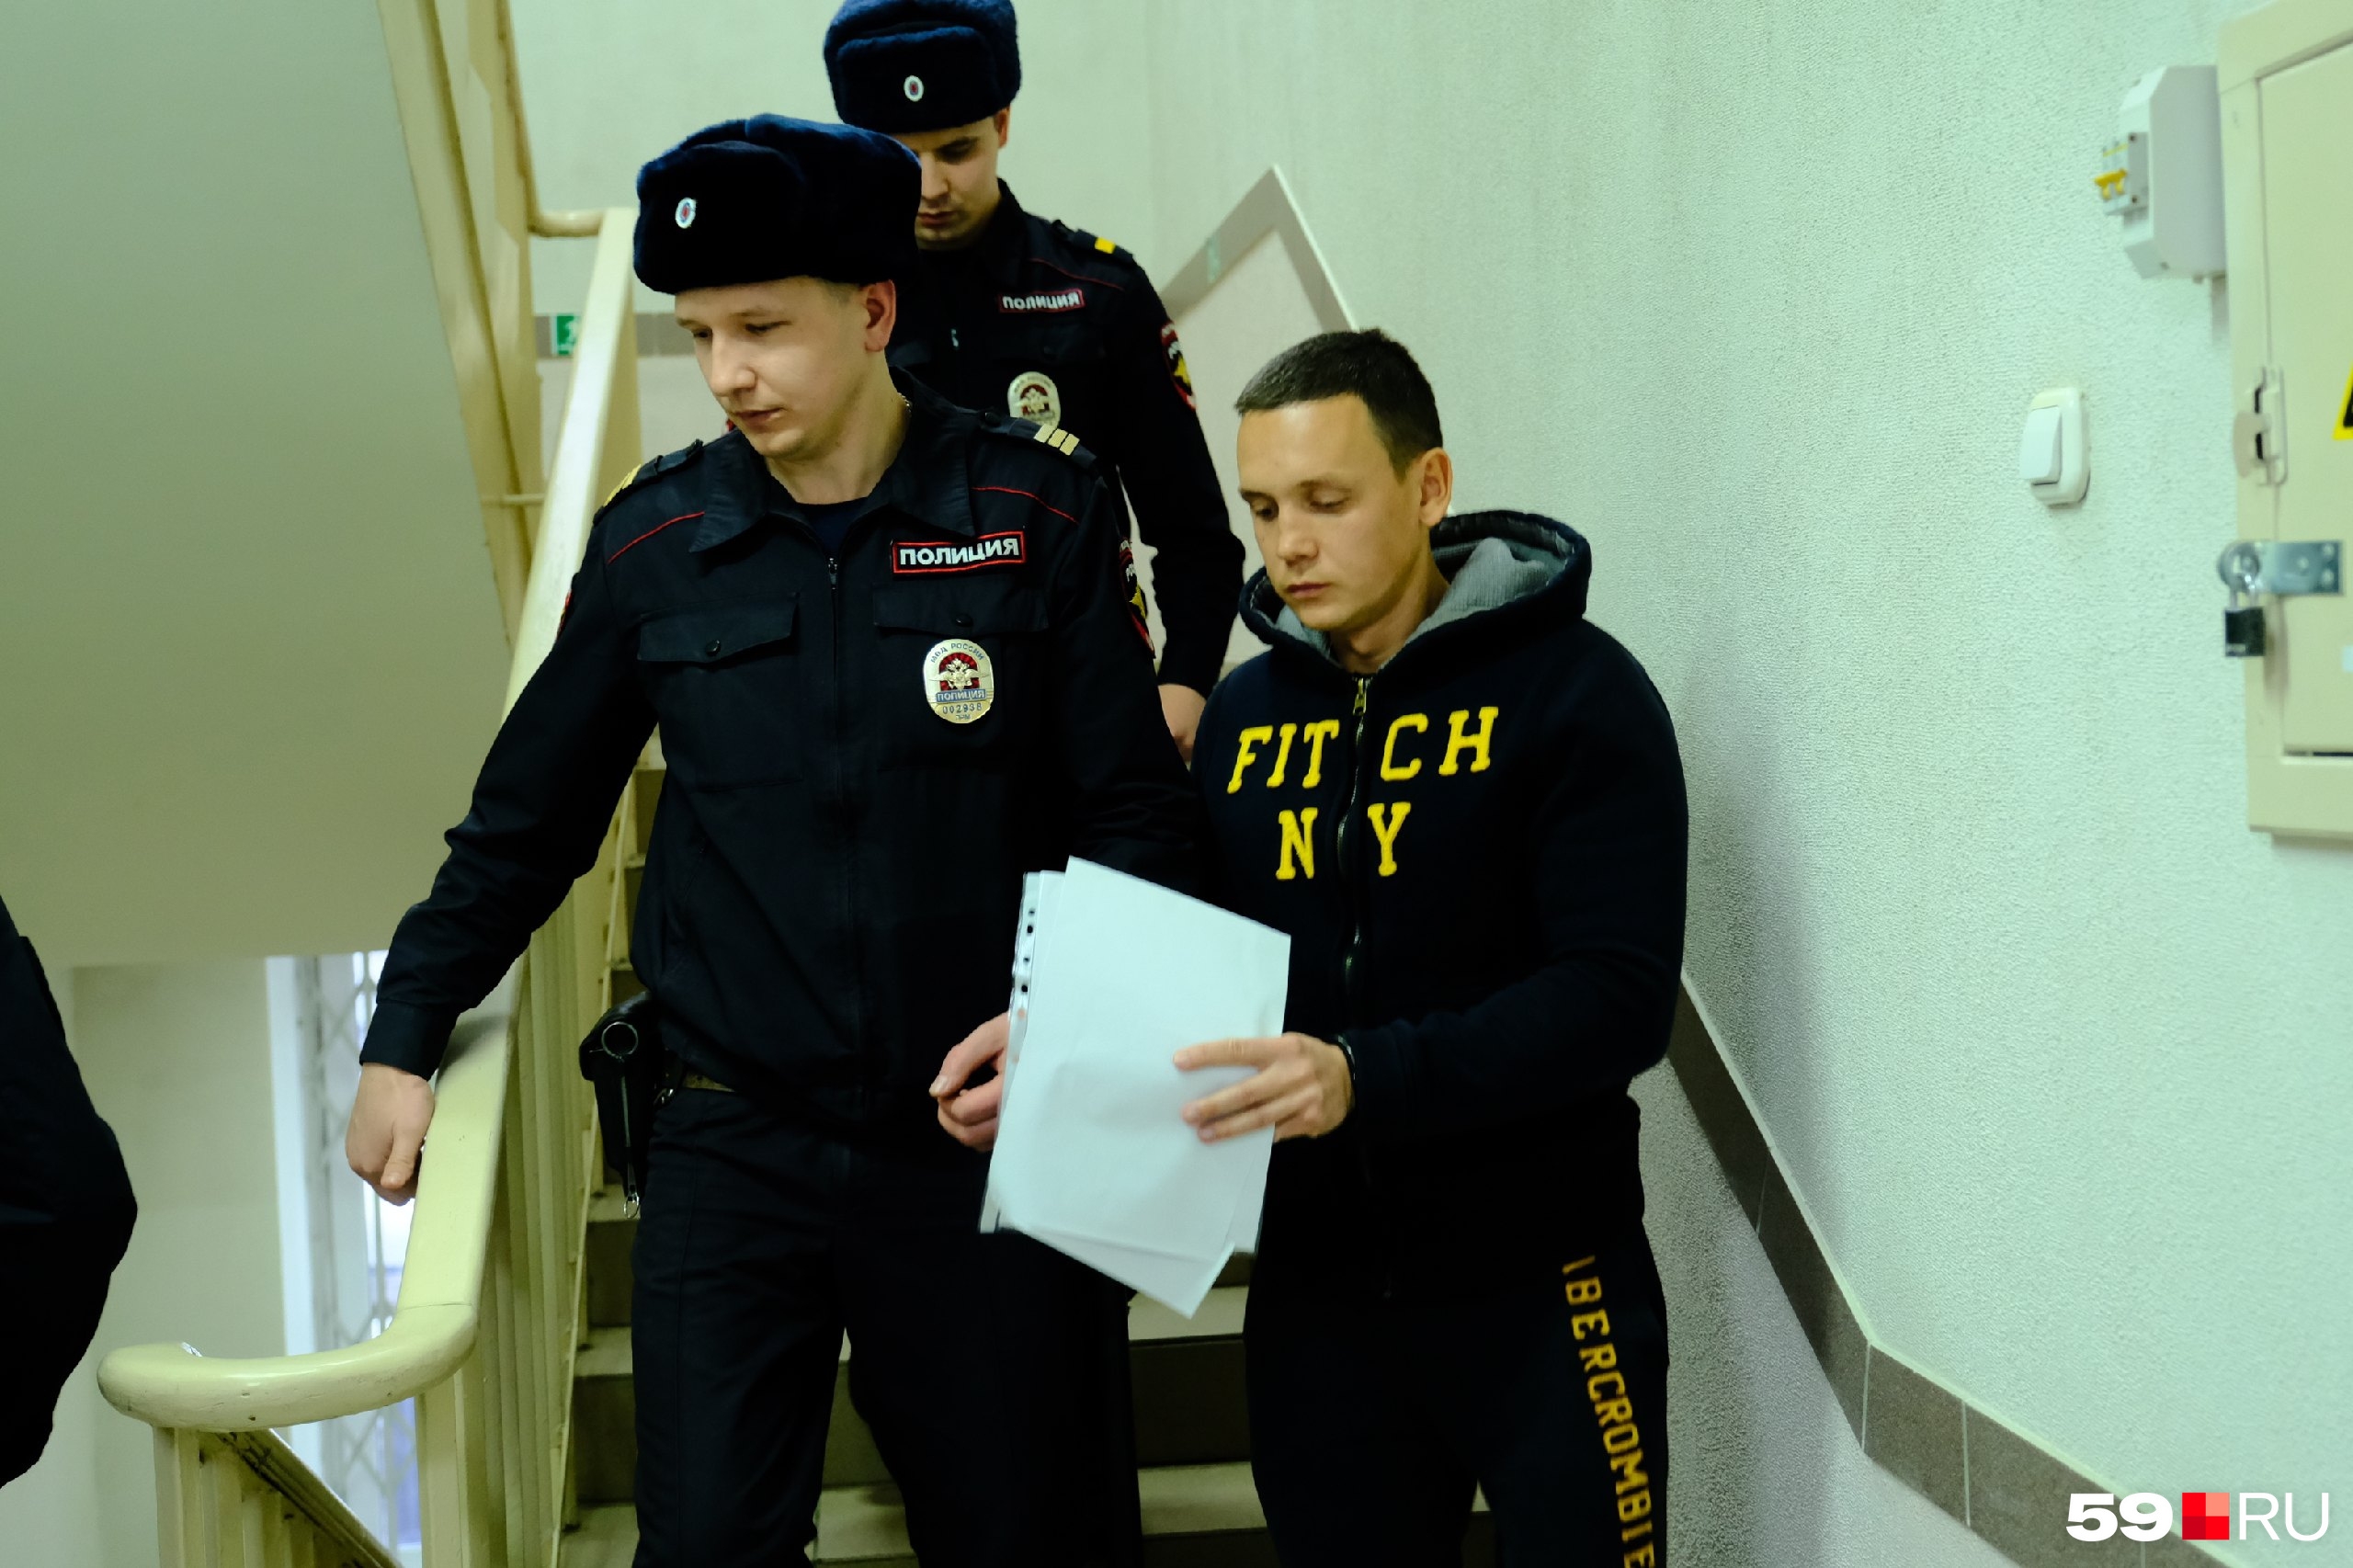 Сергея Щербакова вывели из суда на время перерыва